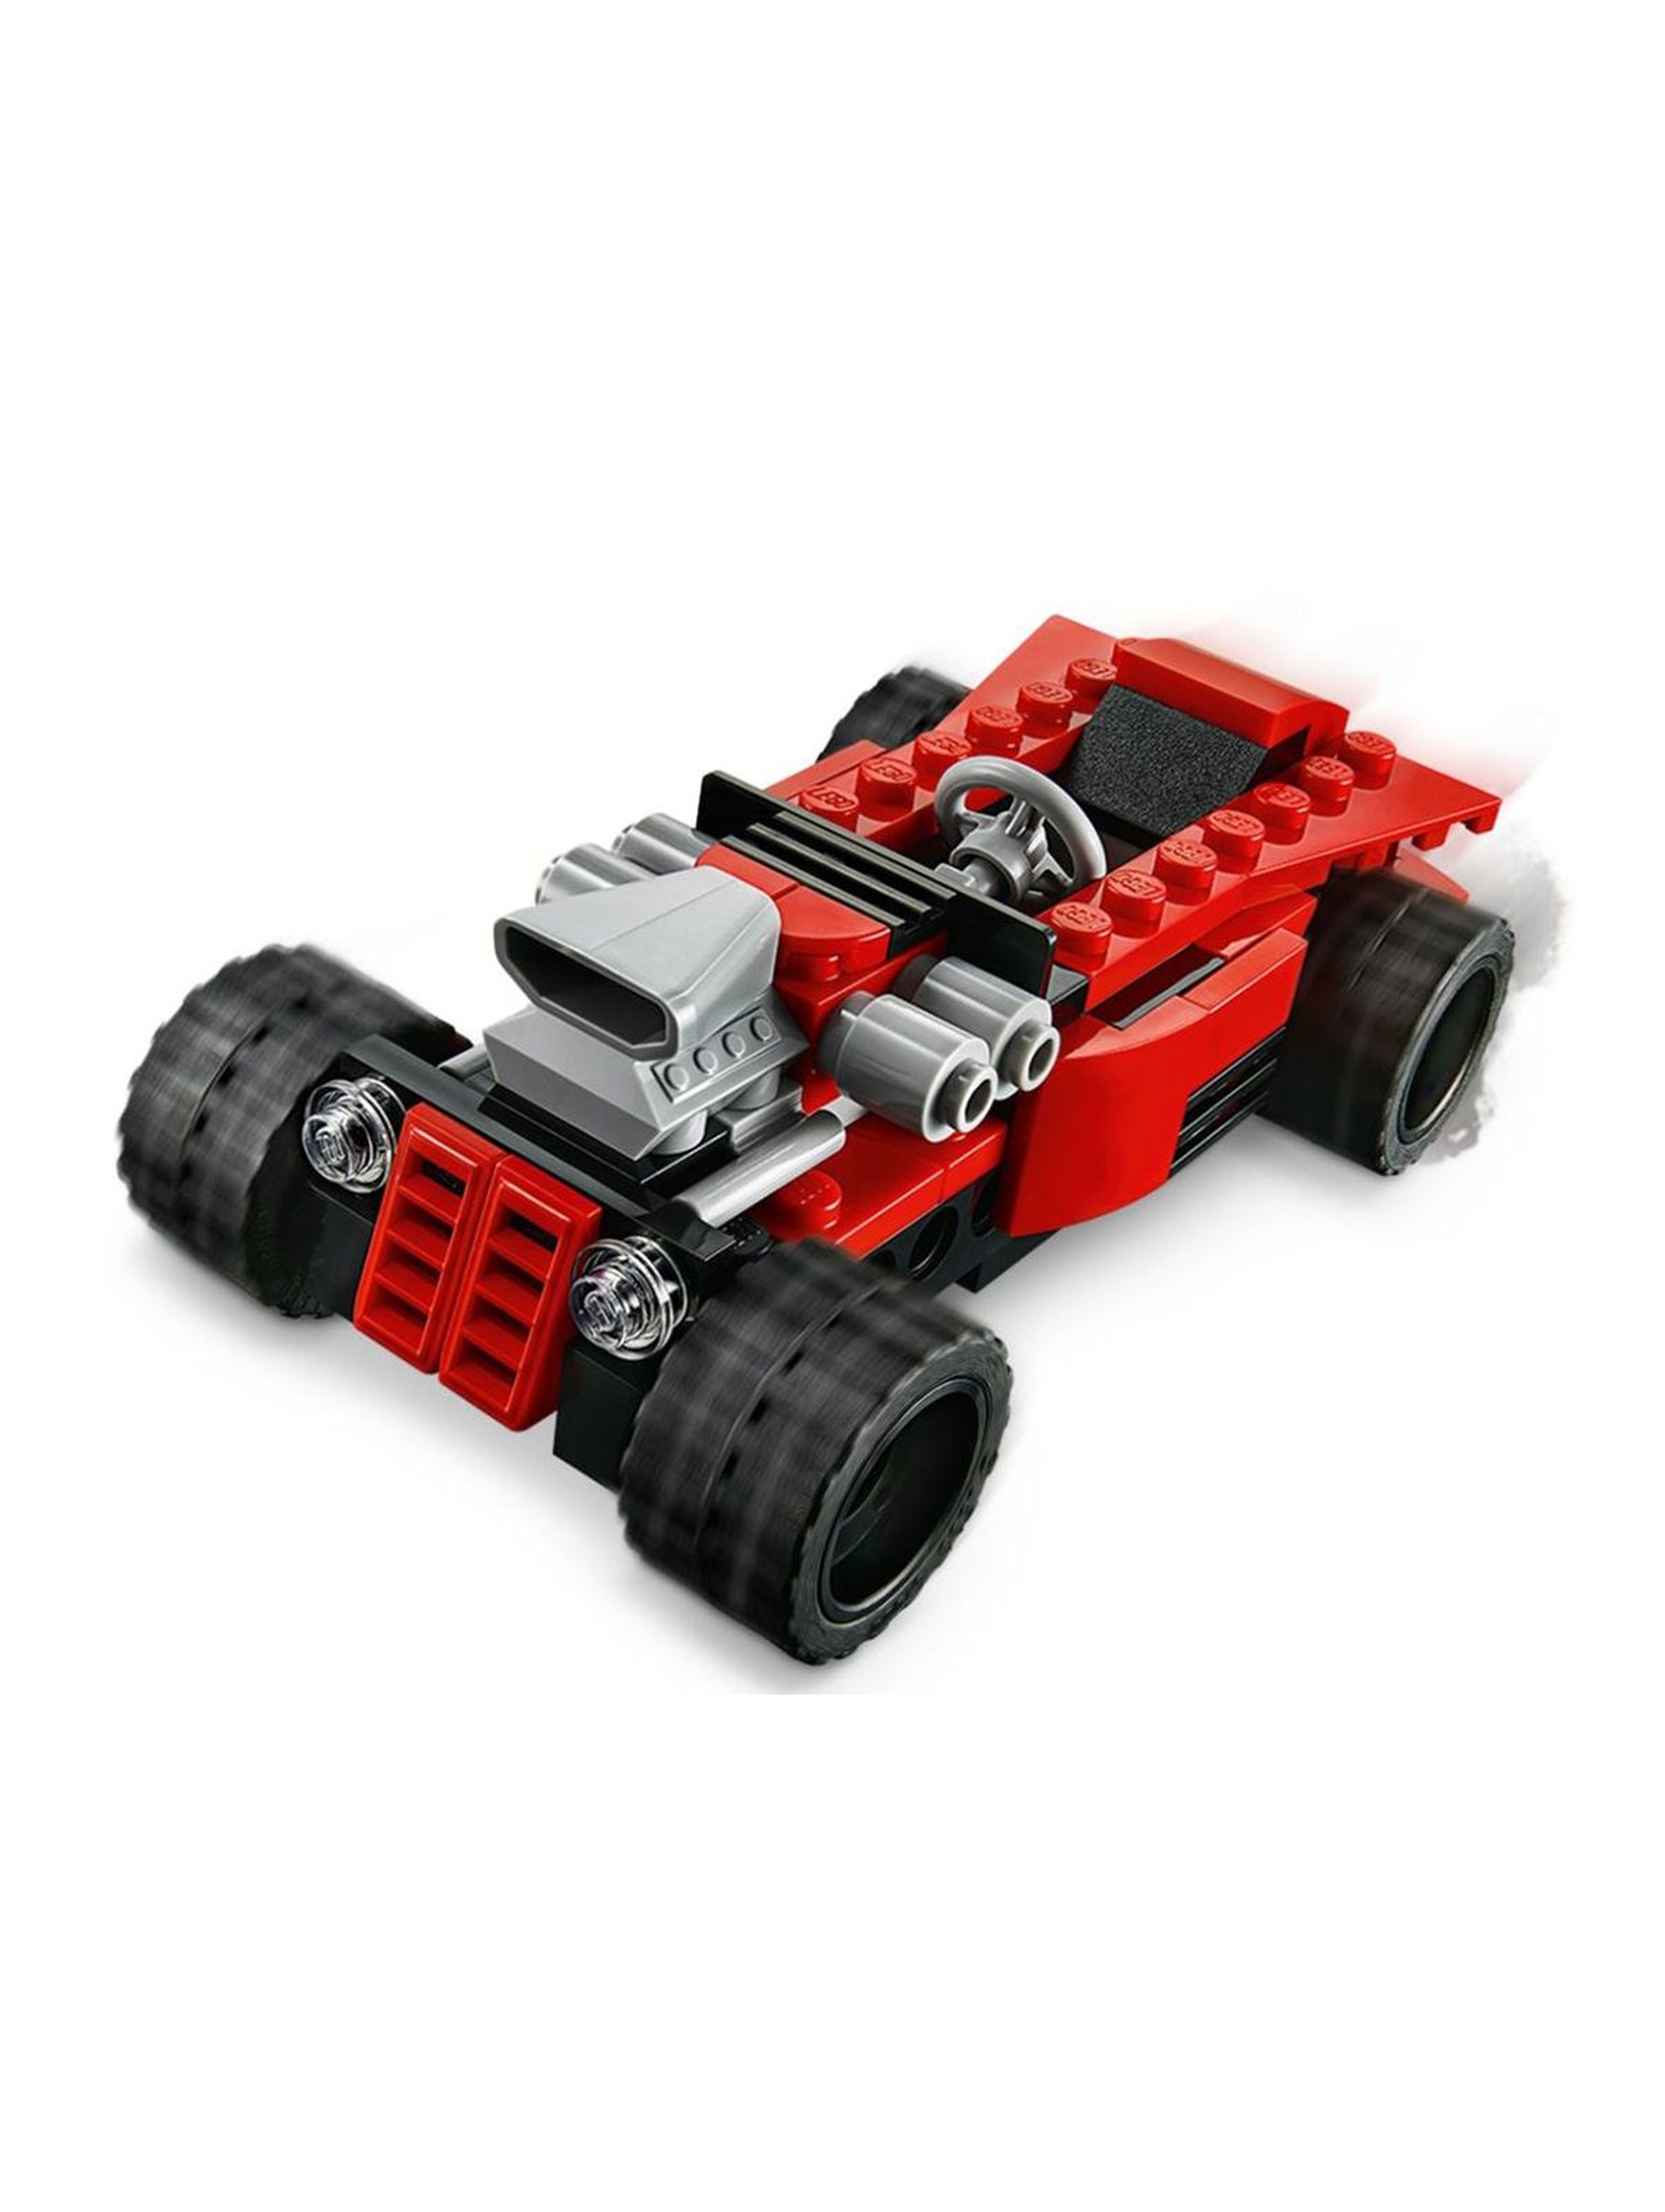 Lego Creator - Samochód sportowy - 134 elementy wiek 6+